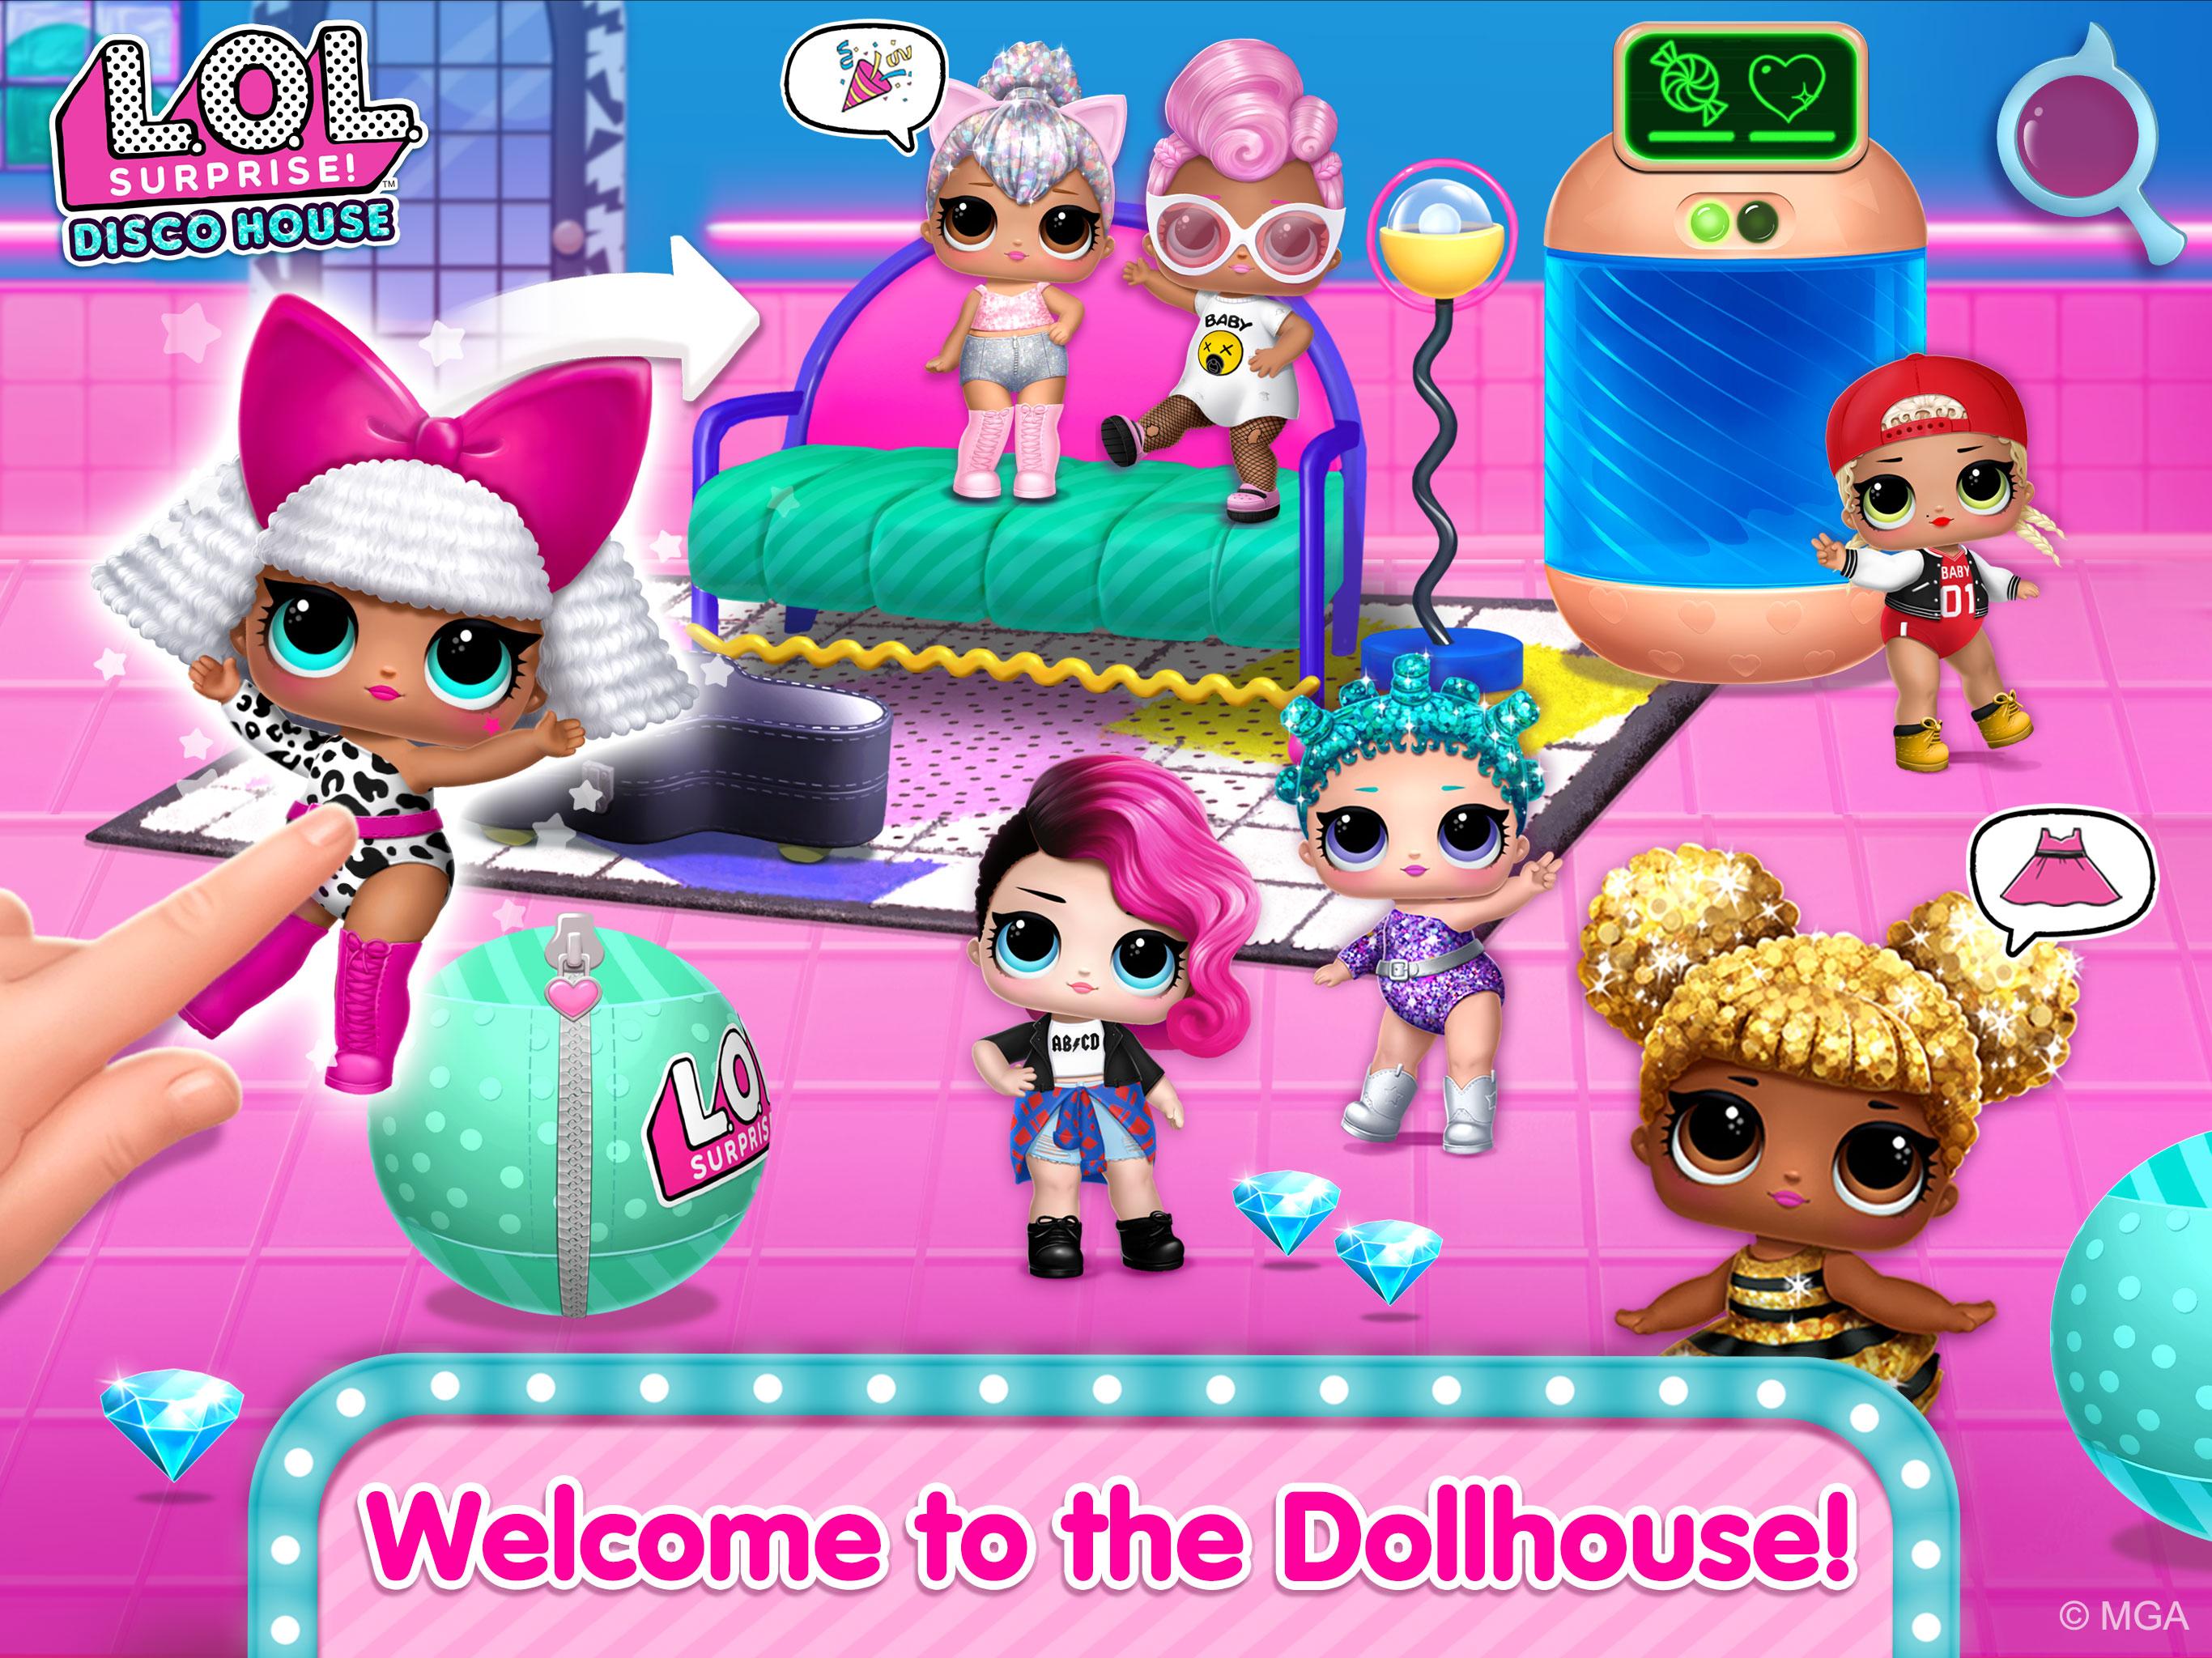 L.O.L. Surprise! Disco House – Collect Cute Dolls 1.0.10 Screenshot 9